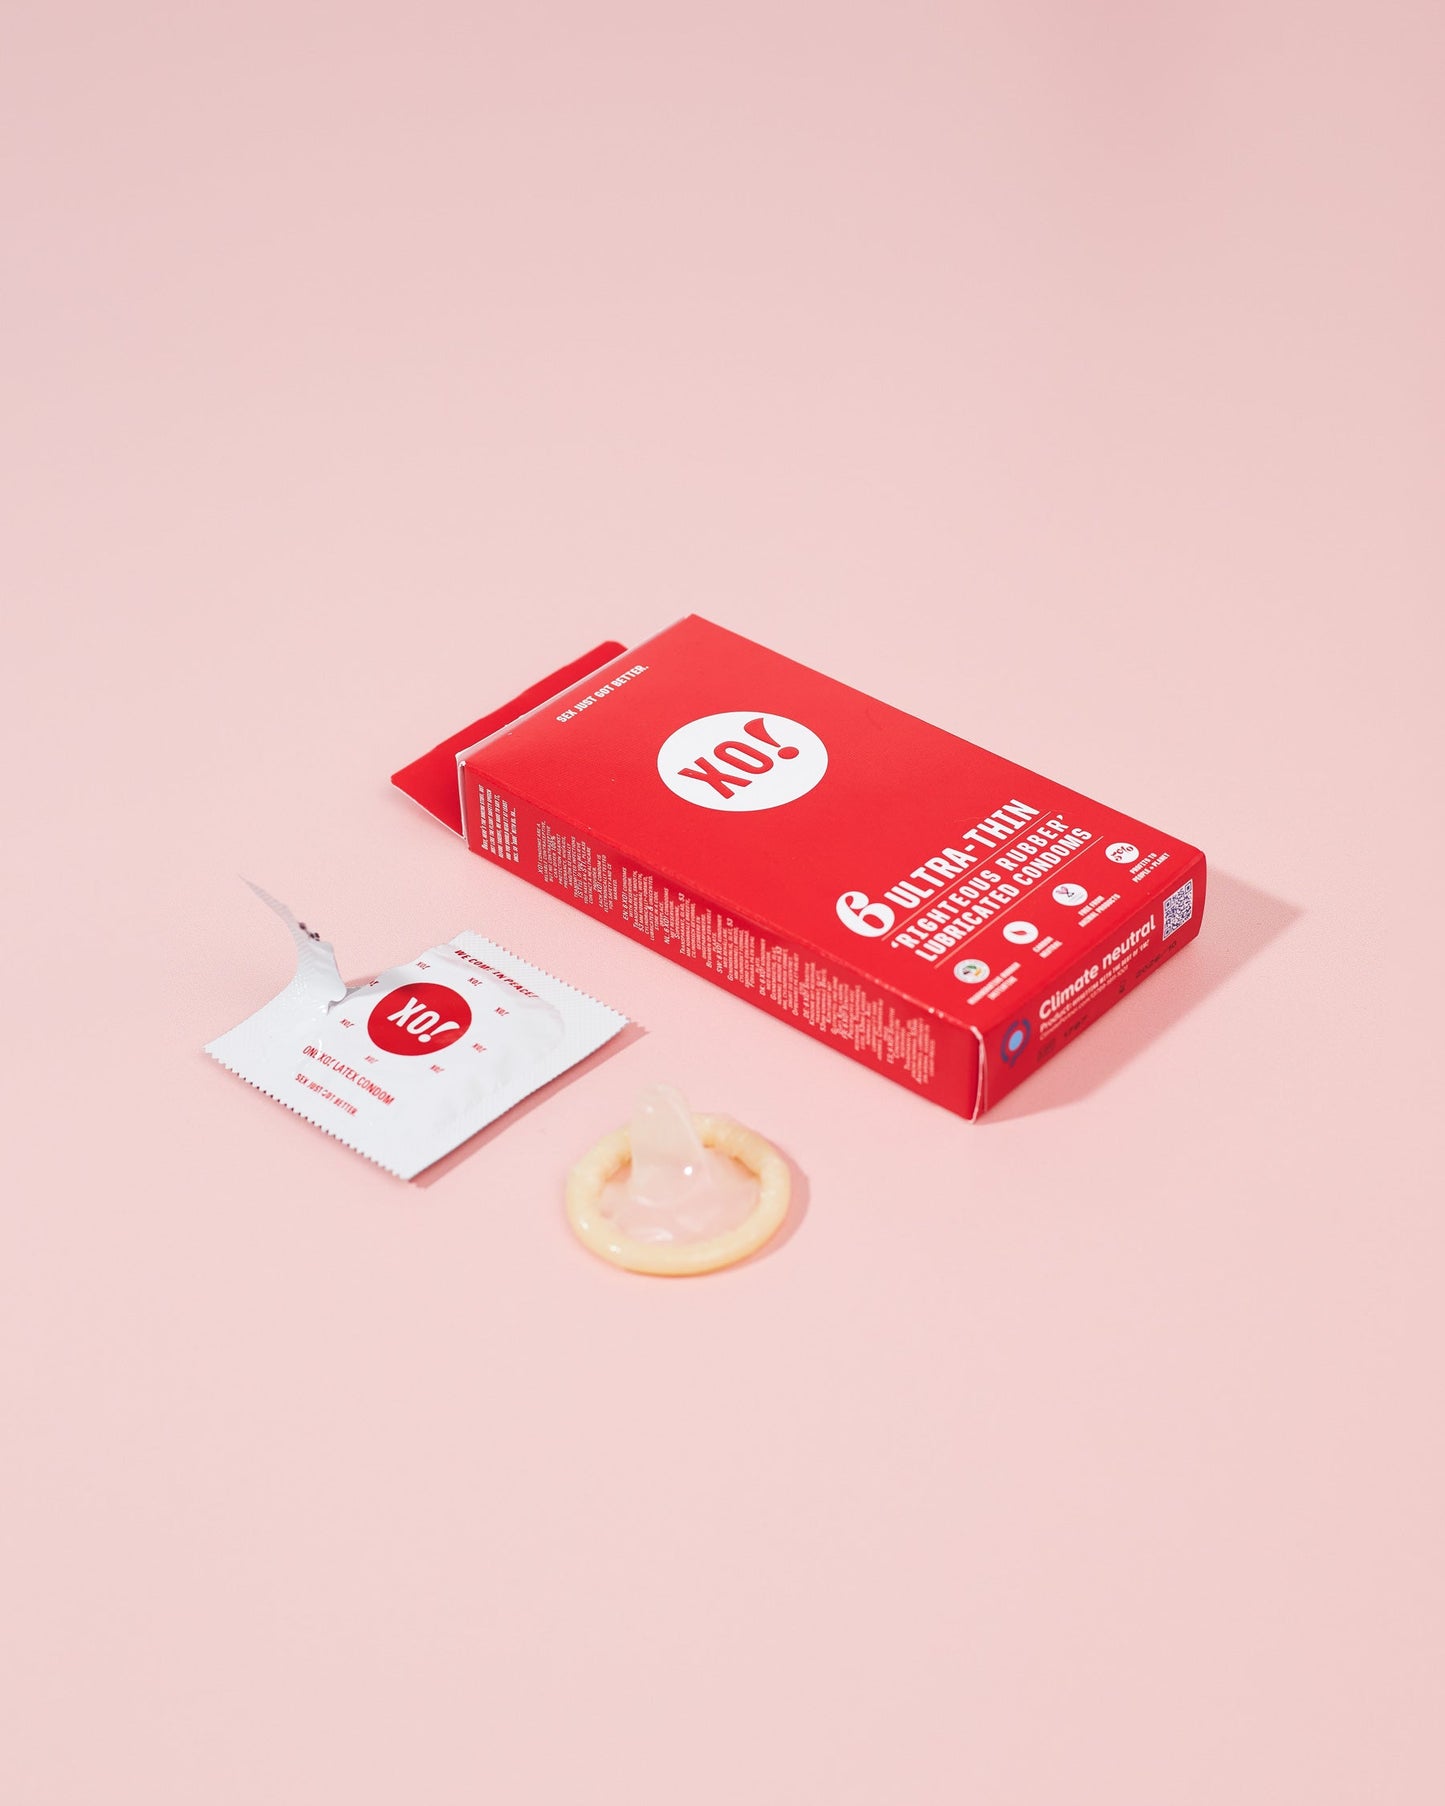 XO! Ultra-Thin Vegan Condoms